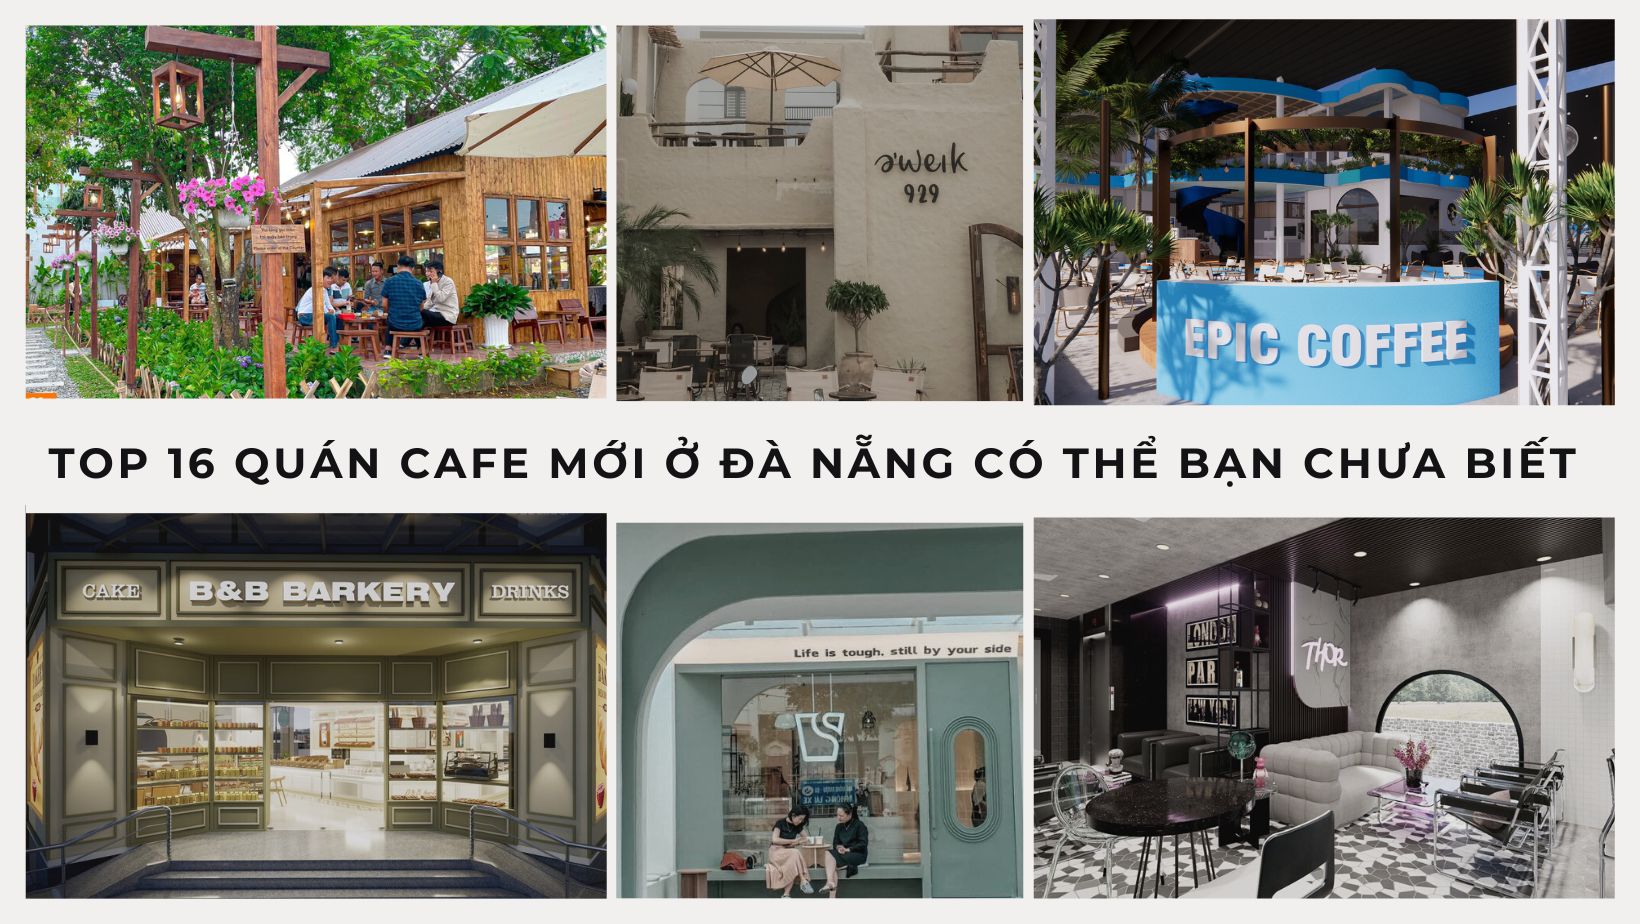 Top 16 Quán Cafe Mới Ở Đà Nẵng Có Thể Bạn Chưa Biết 